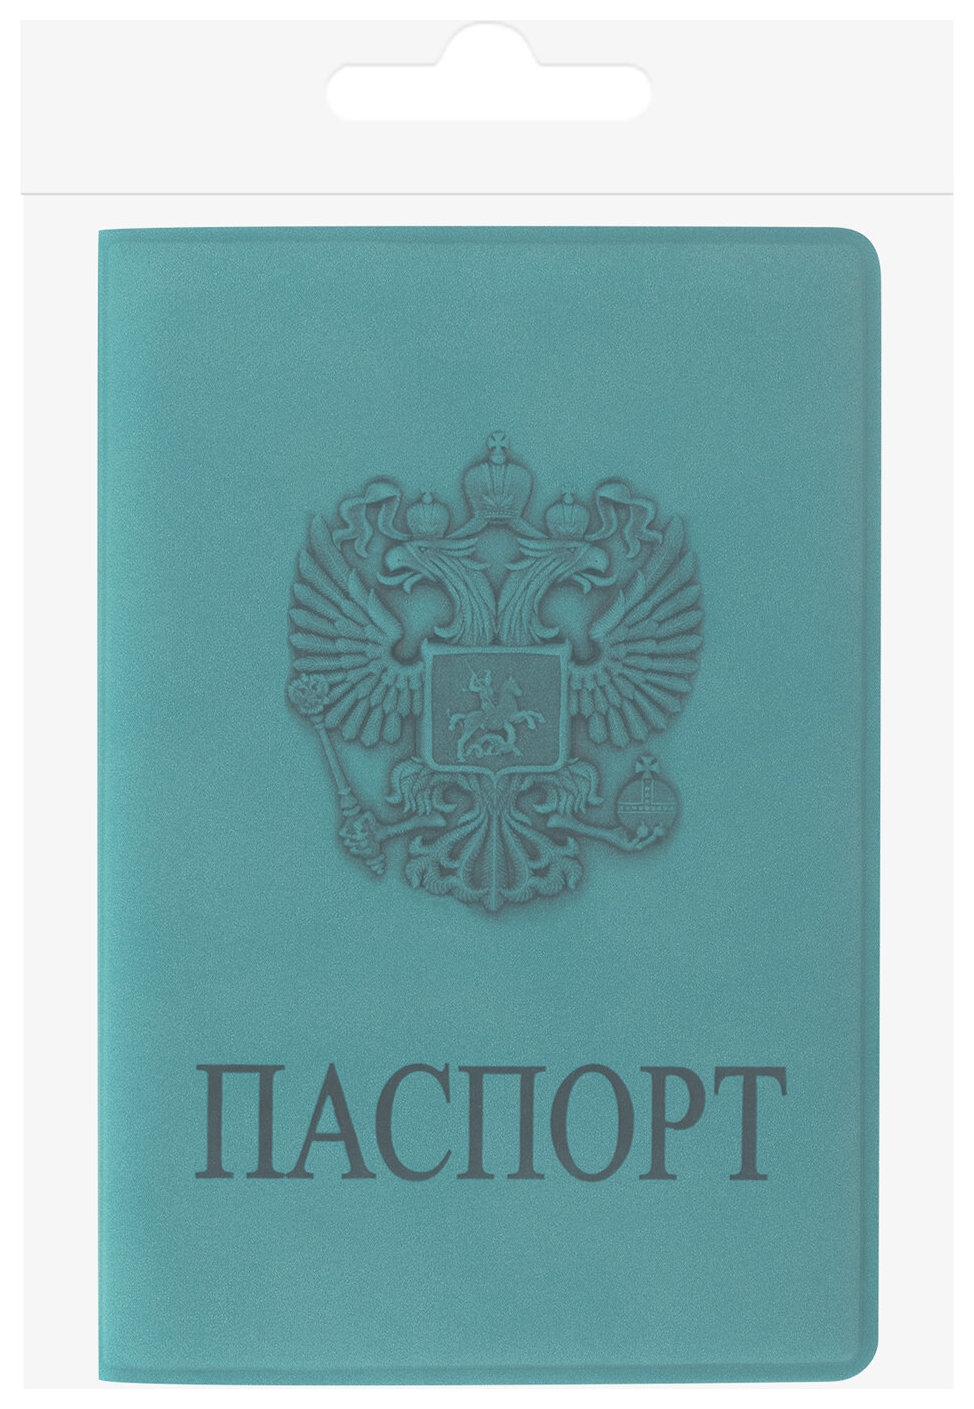 Обложка для паспорта Staff, мягкий полиуретан, Герб, темно-бирюзовая, 237611